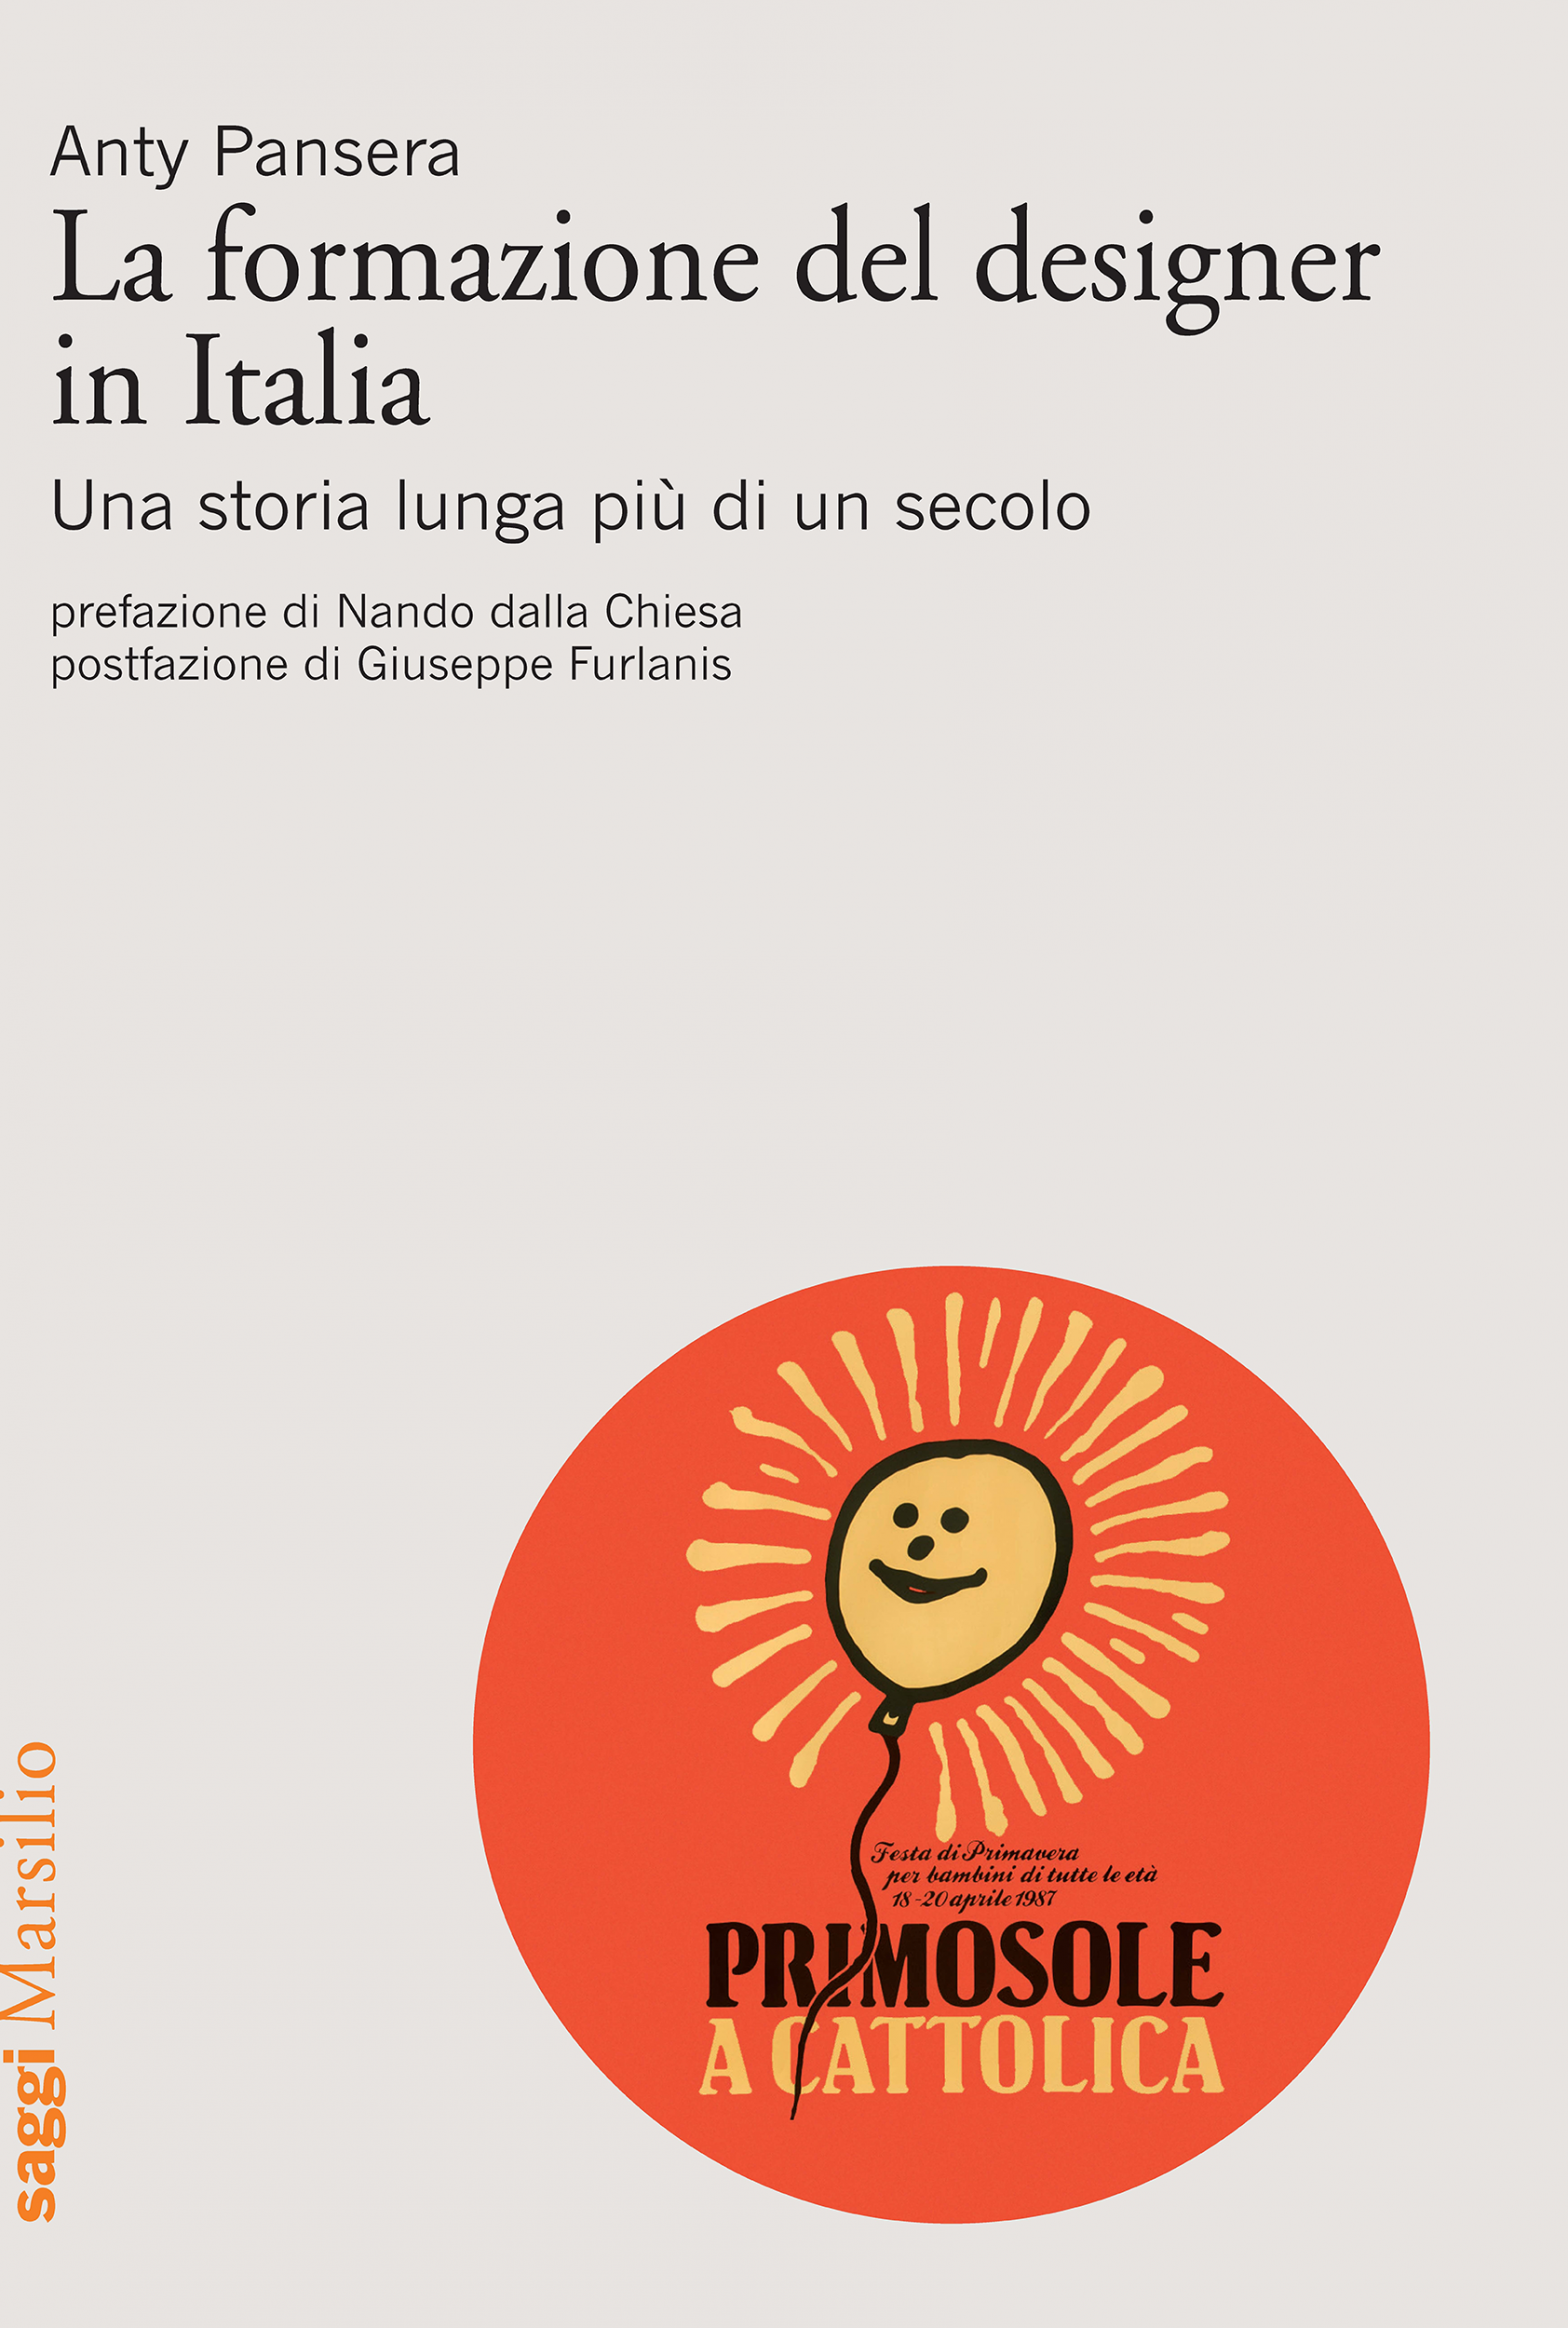 Copertina del libro "La formazione del designer in Italia"